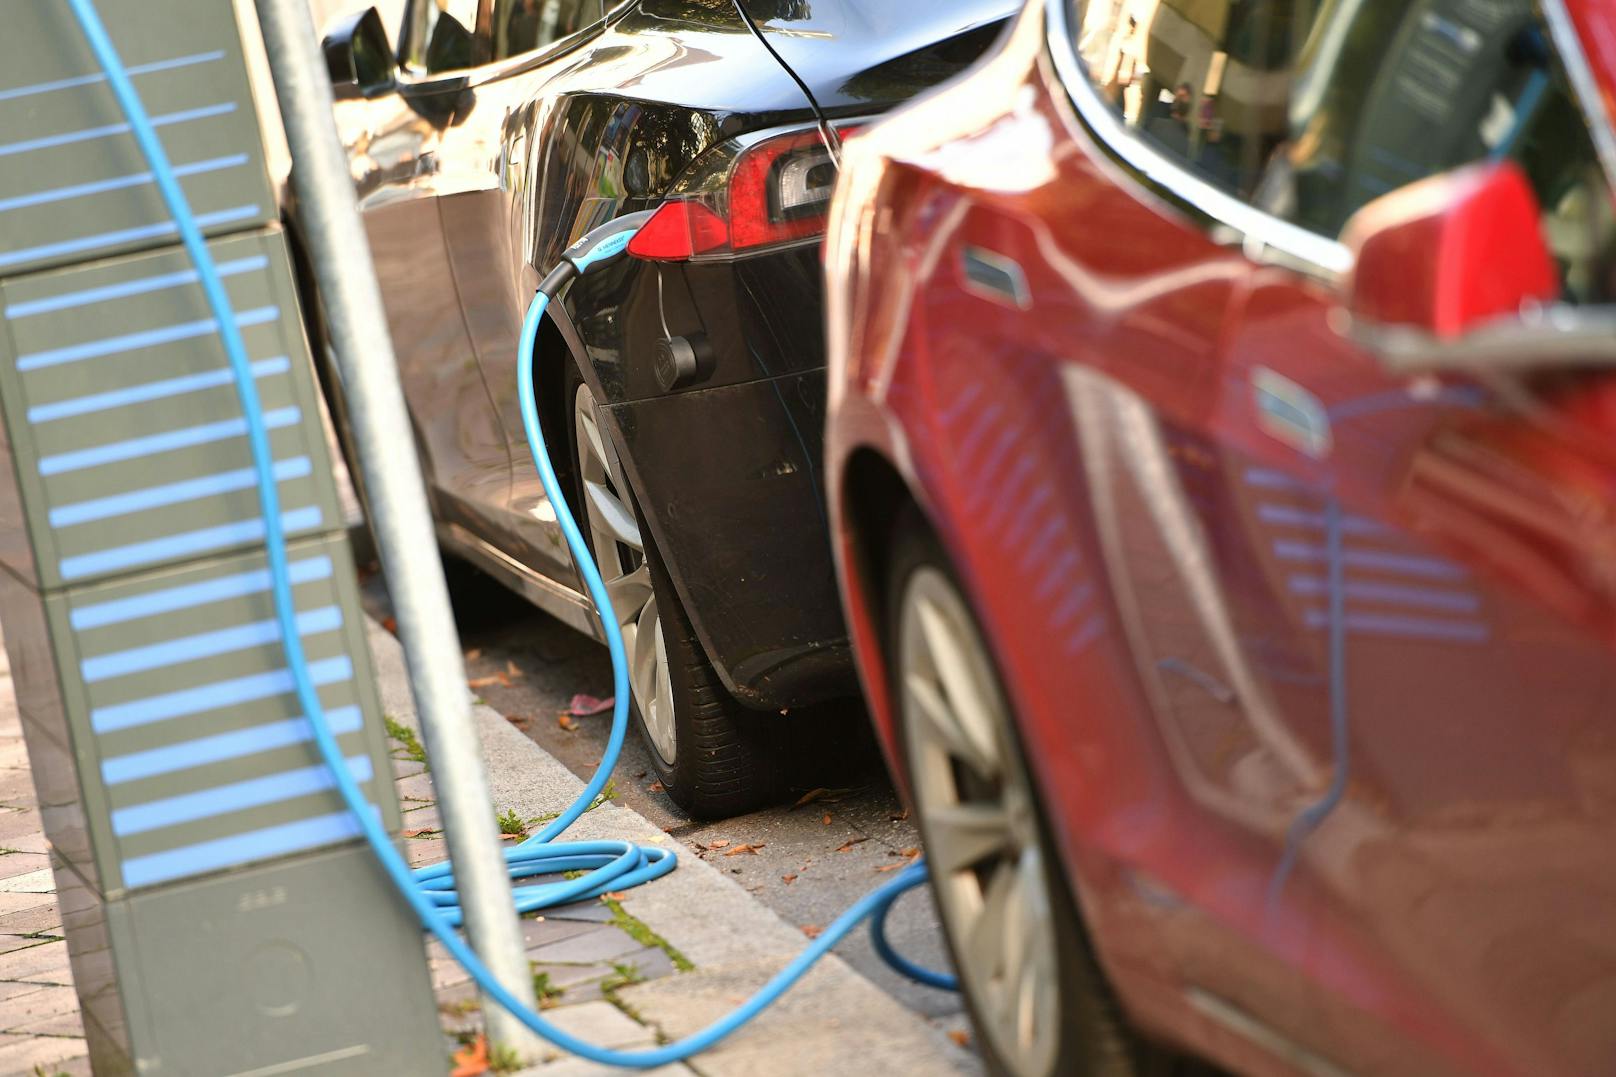 Die britische Automarke Jaguar will ab 2025 nur noch elektrische Fahrzeuge herstellen. Bis 2039 solle die Marke dann klimaneutral werden.